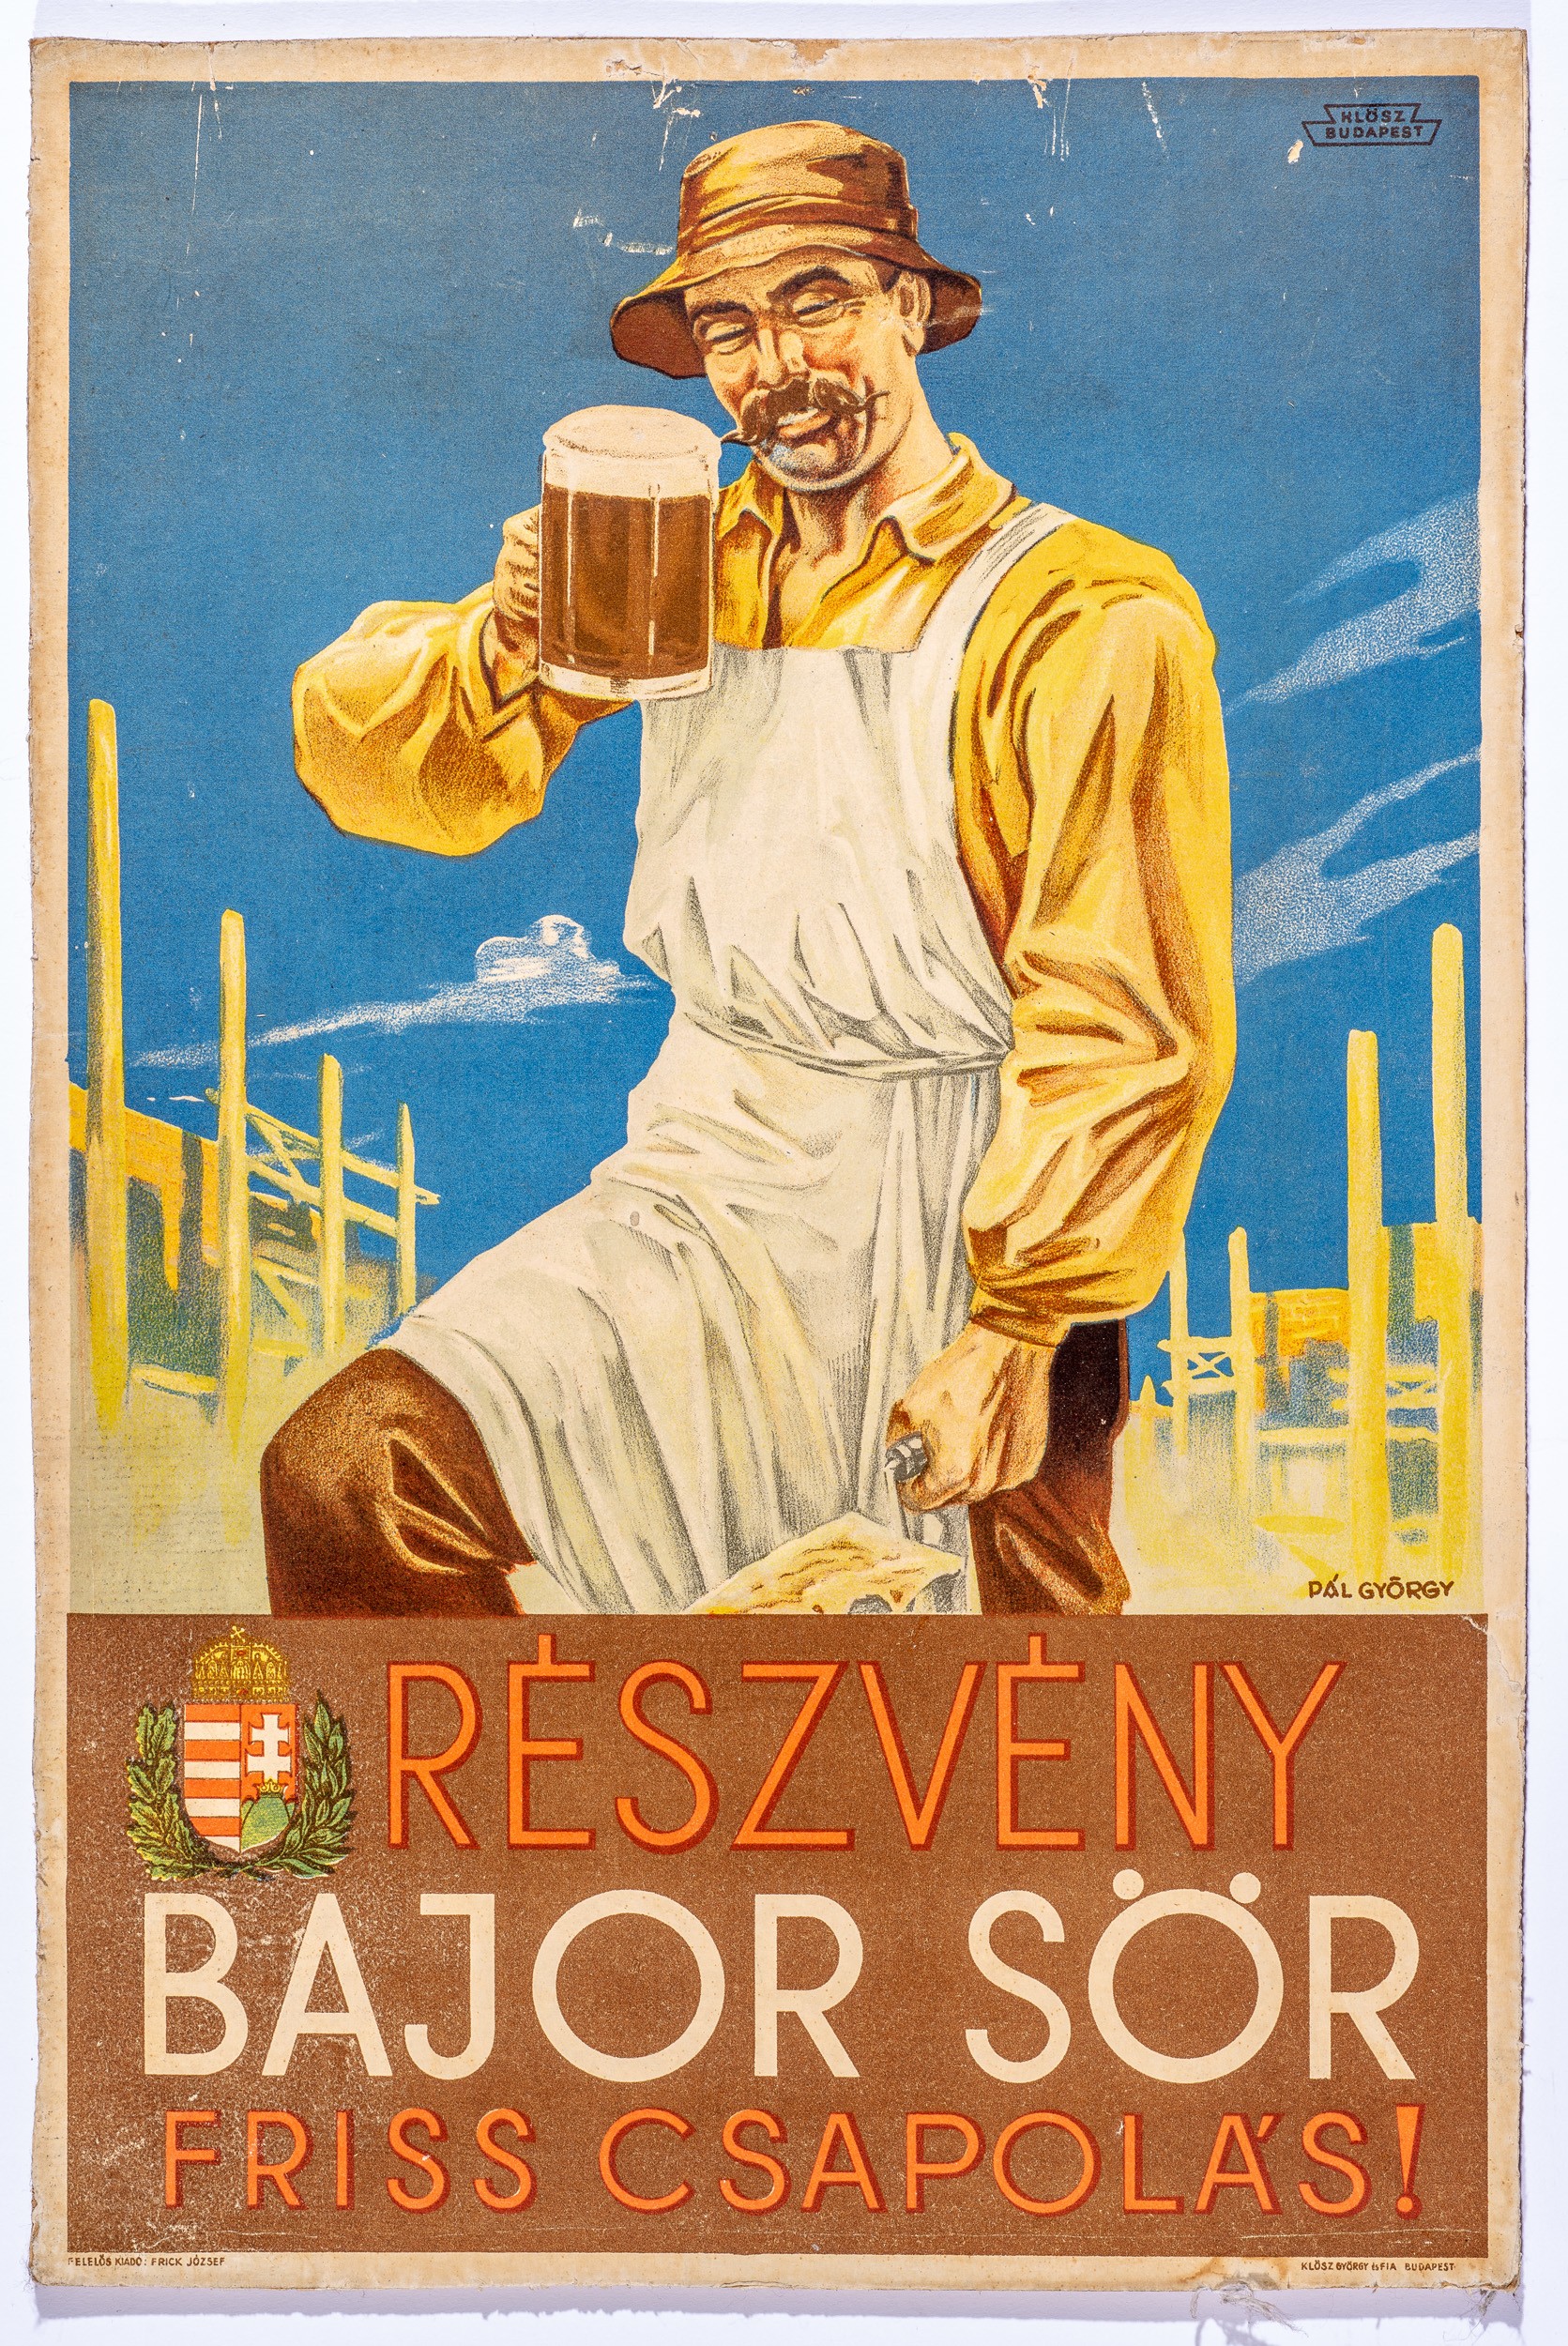 Részvény bajor sör,friss csap,plakát (Söripari Emléktár - Dreher Sörmúzeum CC BY-NC-SA)